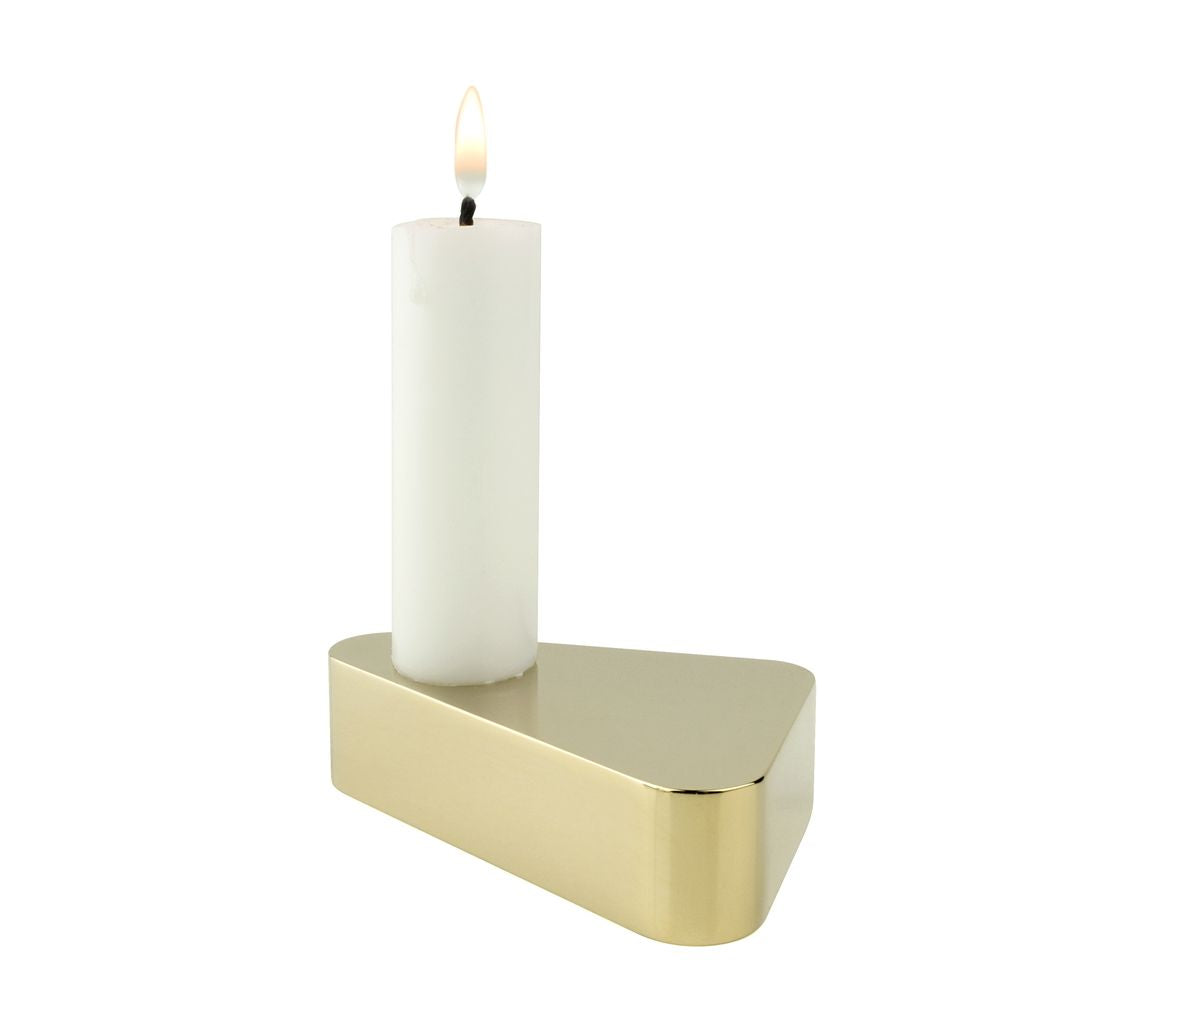 Design novoform Flip Candlestick, oro luccicante